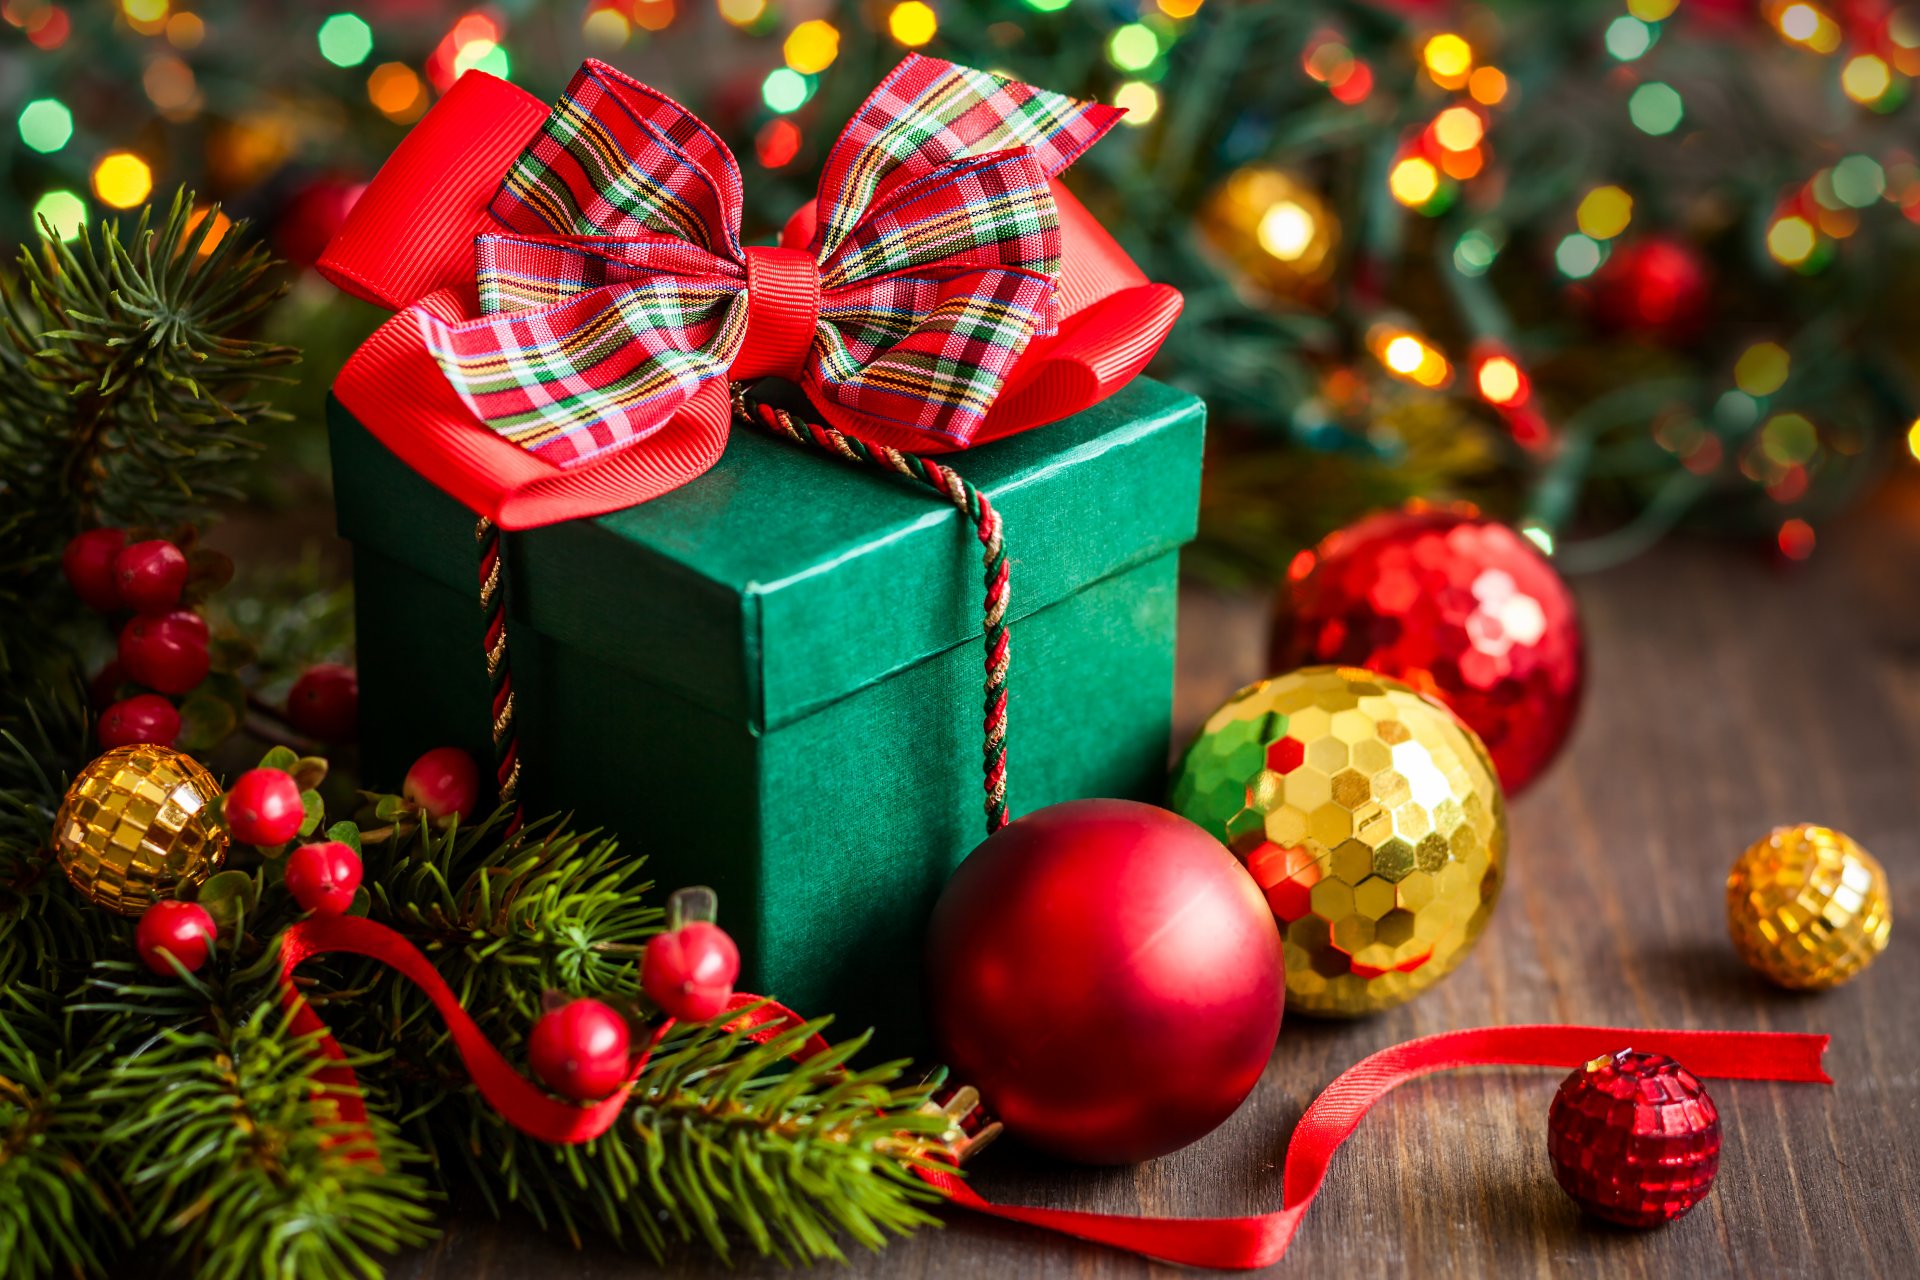 Поздравления с праздниками - Страница 16 Holiday-box-gift-happy-new-year-merry-christmas-ornaments-winter-snow-decoration-prazdnik-ukrasheniya-zima-sneg-ukrasheniya-s-novym-godom-rozhdestvom-korobka-podarok